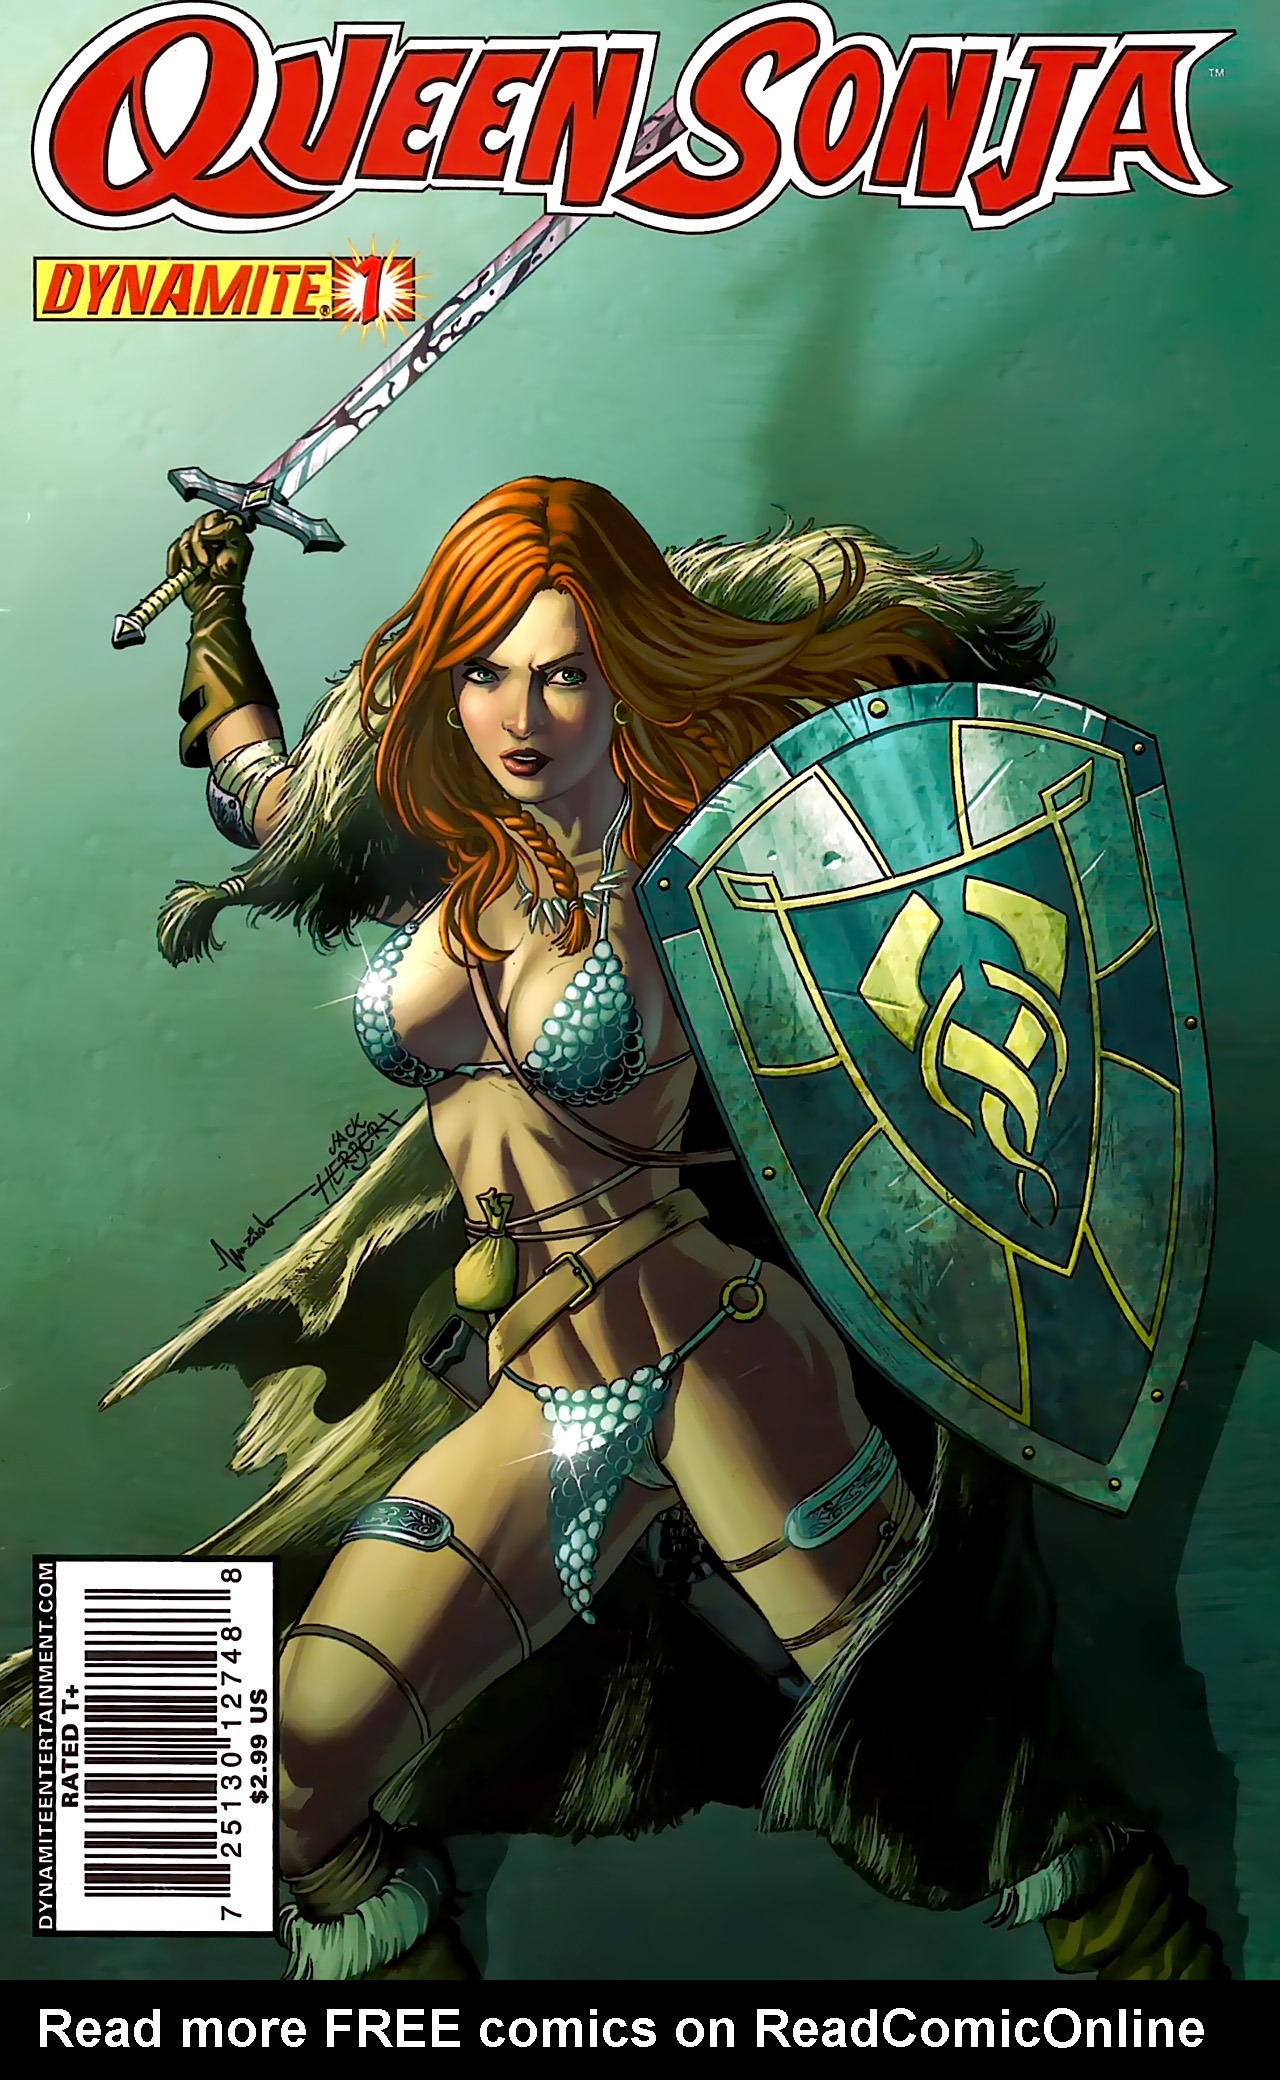 Read online Queen Sonja comic -  Issue #1 - 1